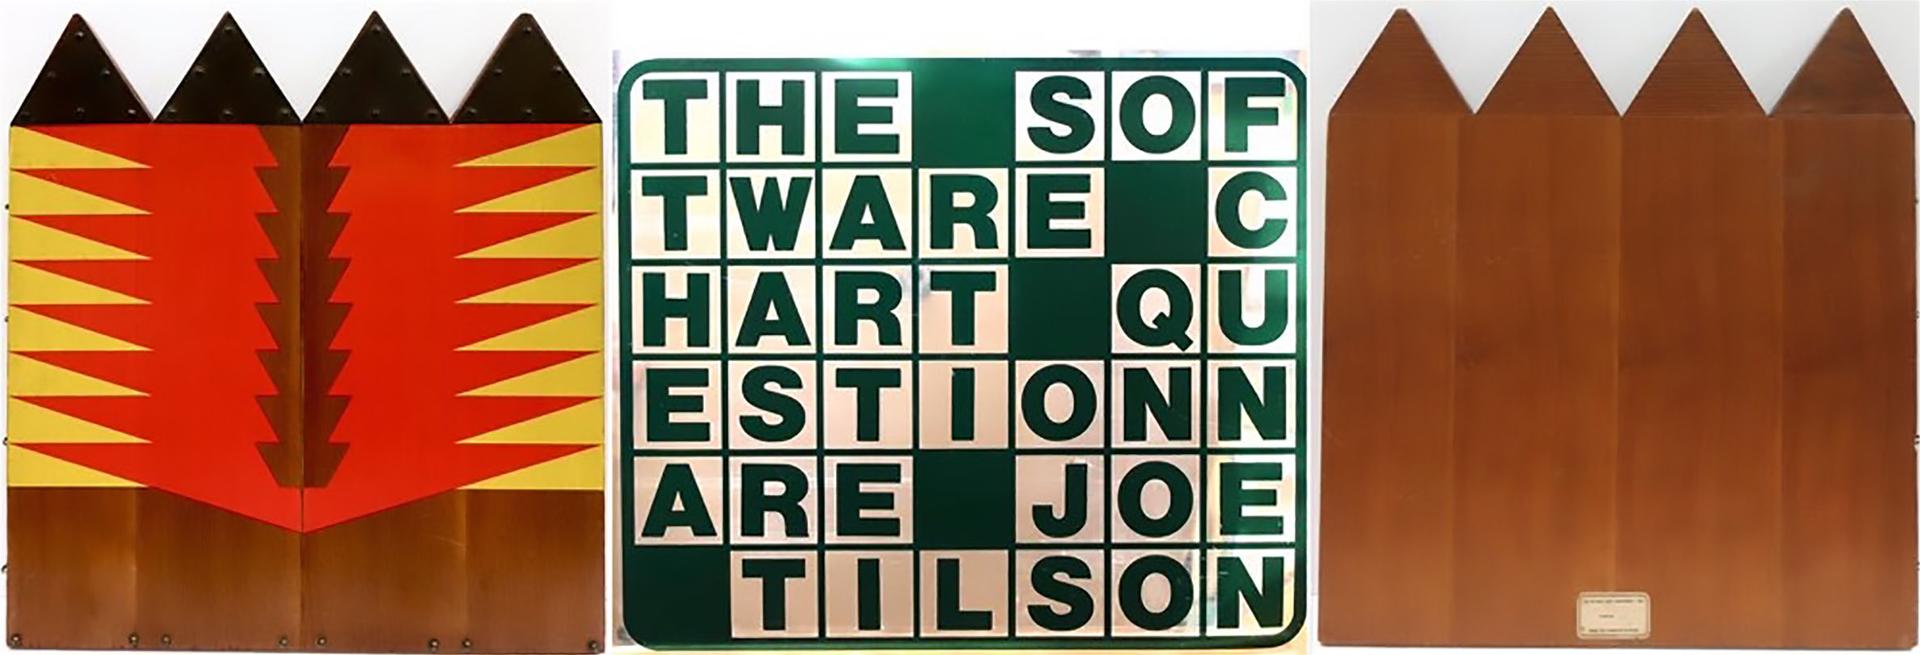 Joe Tilson - The Software Chart Questionnare, 1968